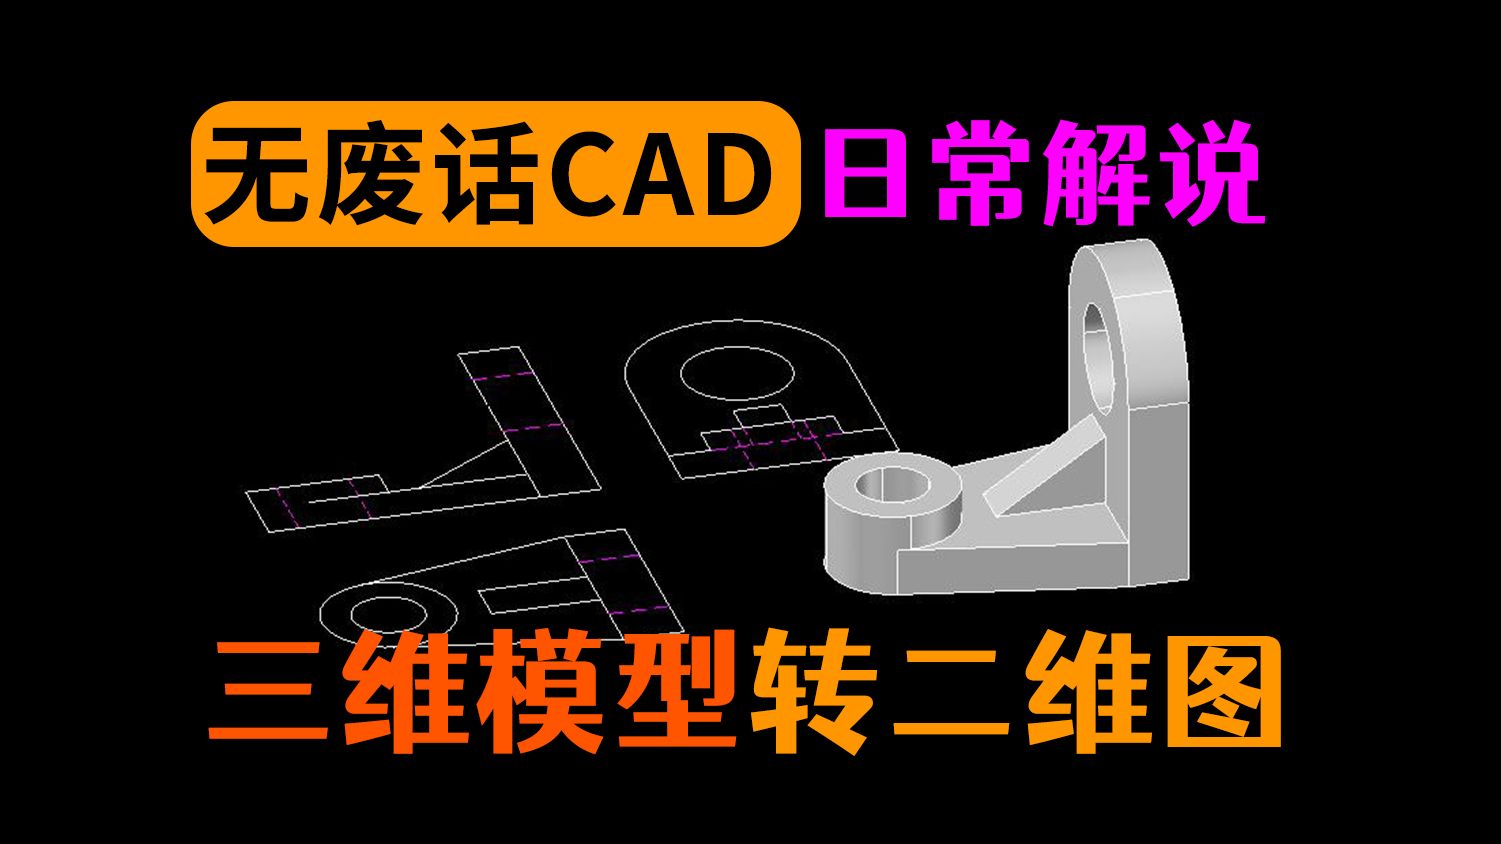 CAD中三维模型转化为二维三视图